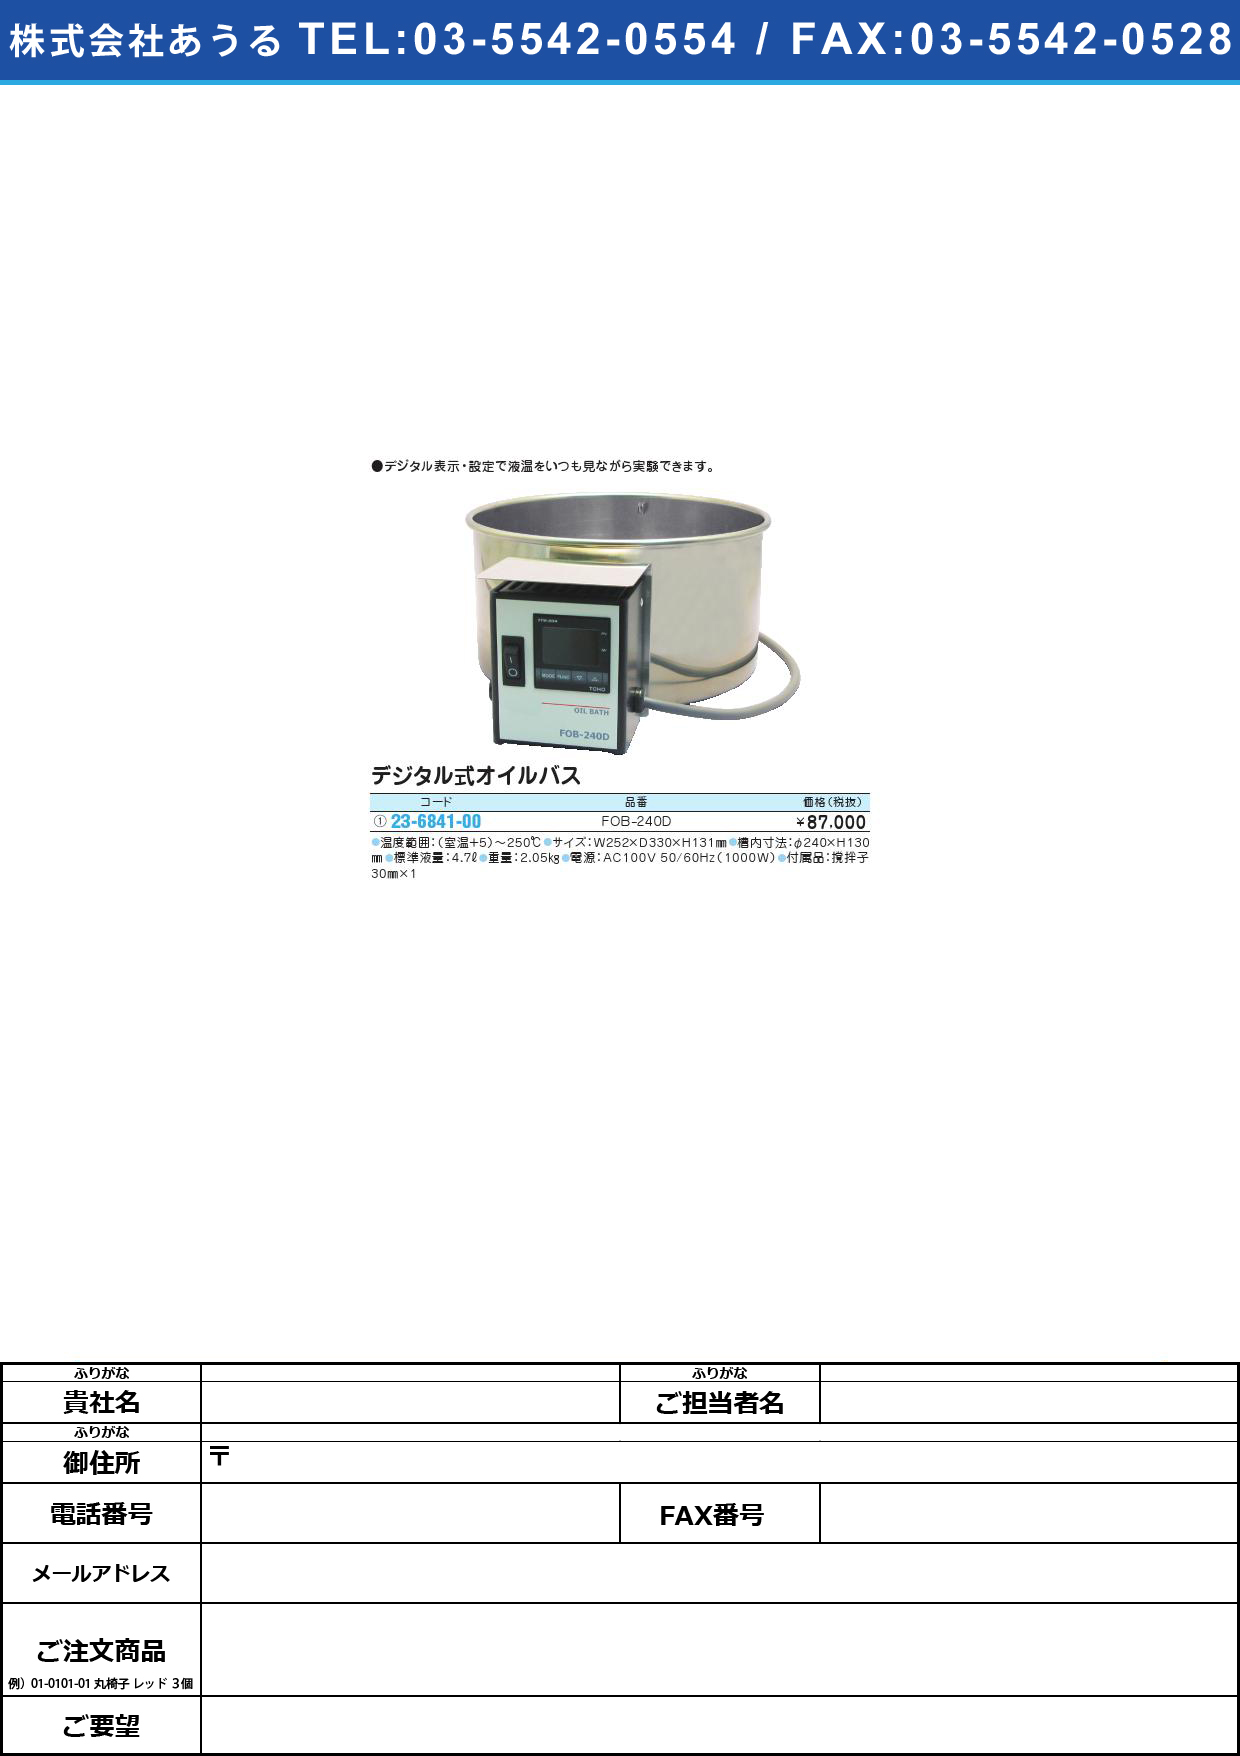 デジタル式オイルバス FOB-240Dﾃﾞｼﾞﾀﾙｼｷｵｲﾙﾊﾞｽ(23-6841-00)【1台単位】【2013年カタログ商品】